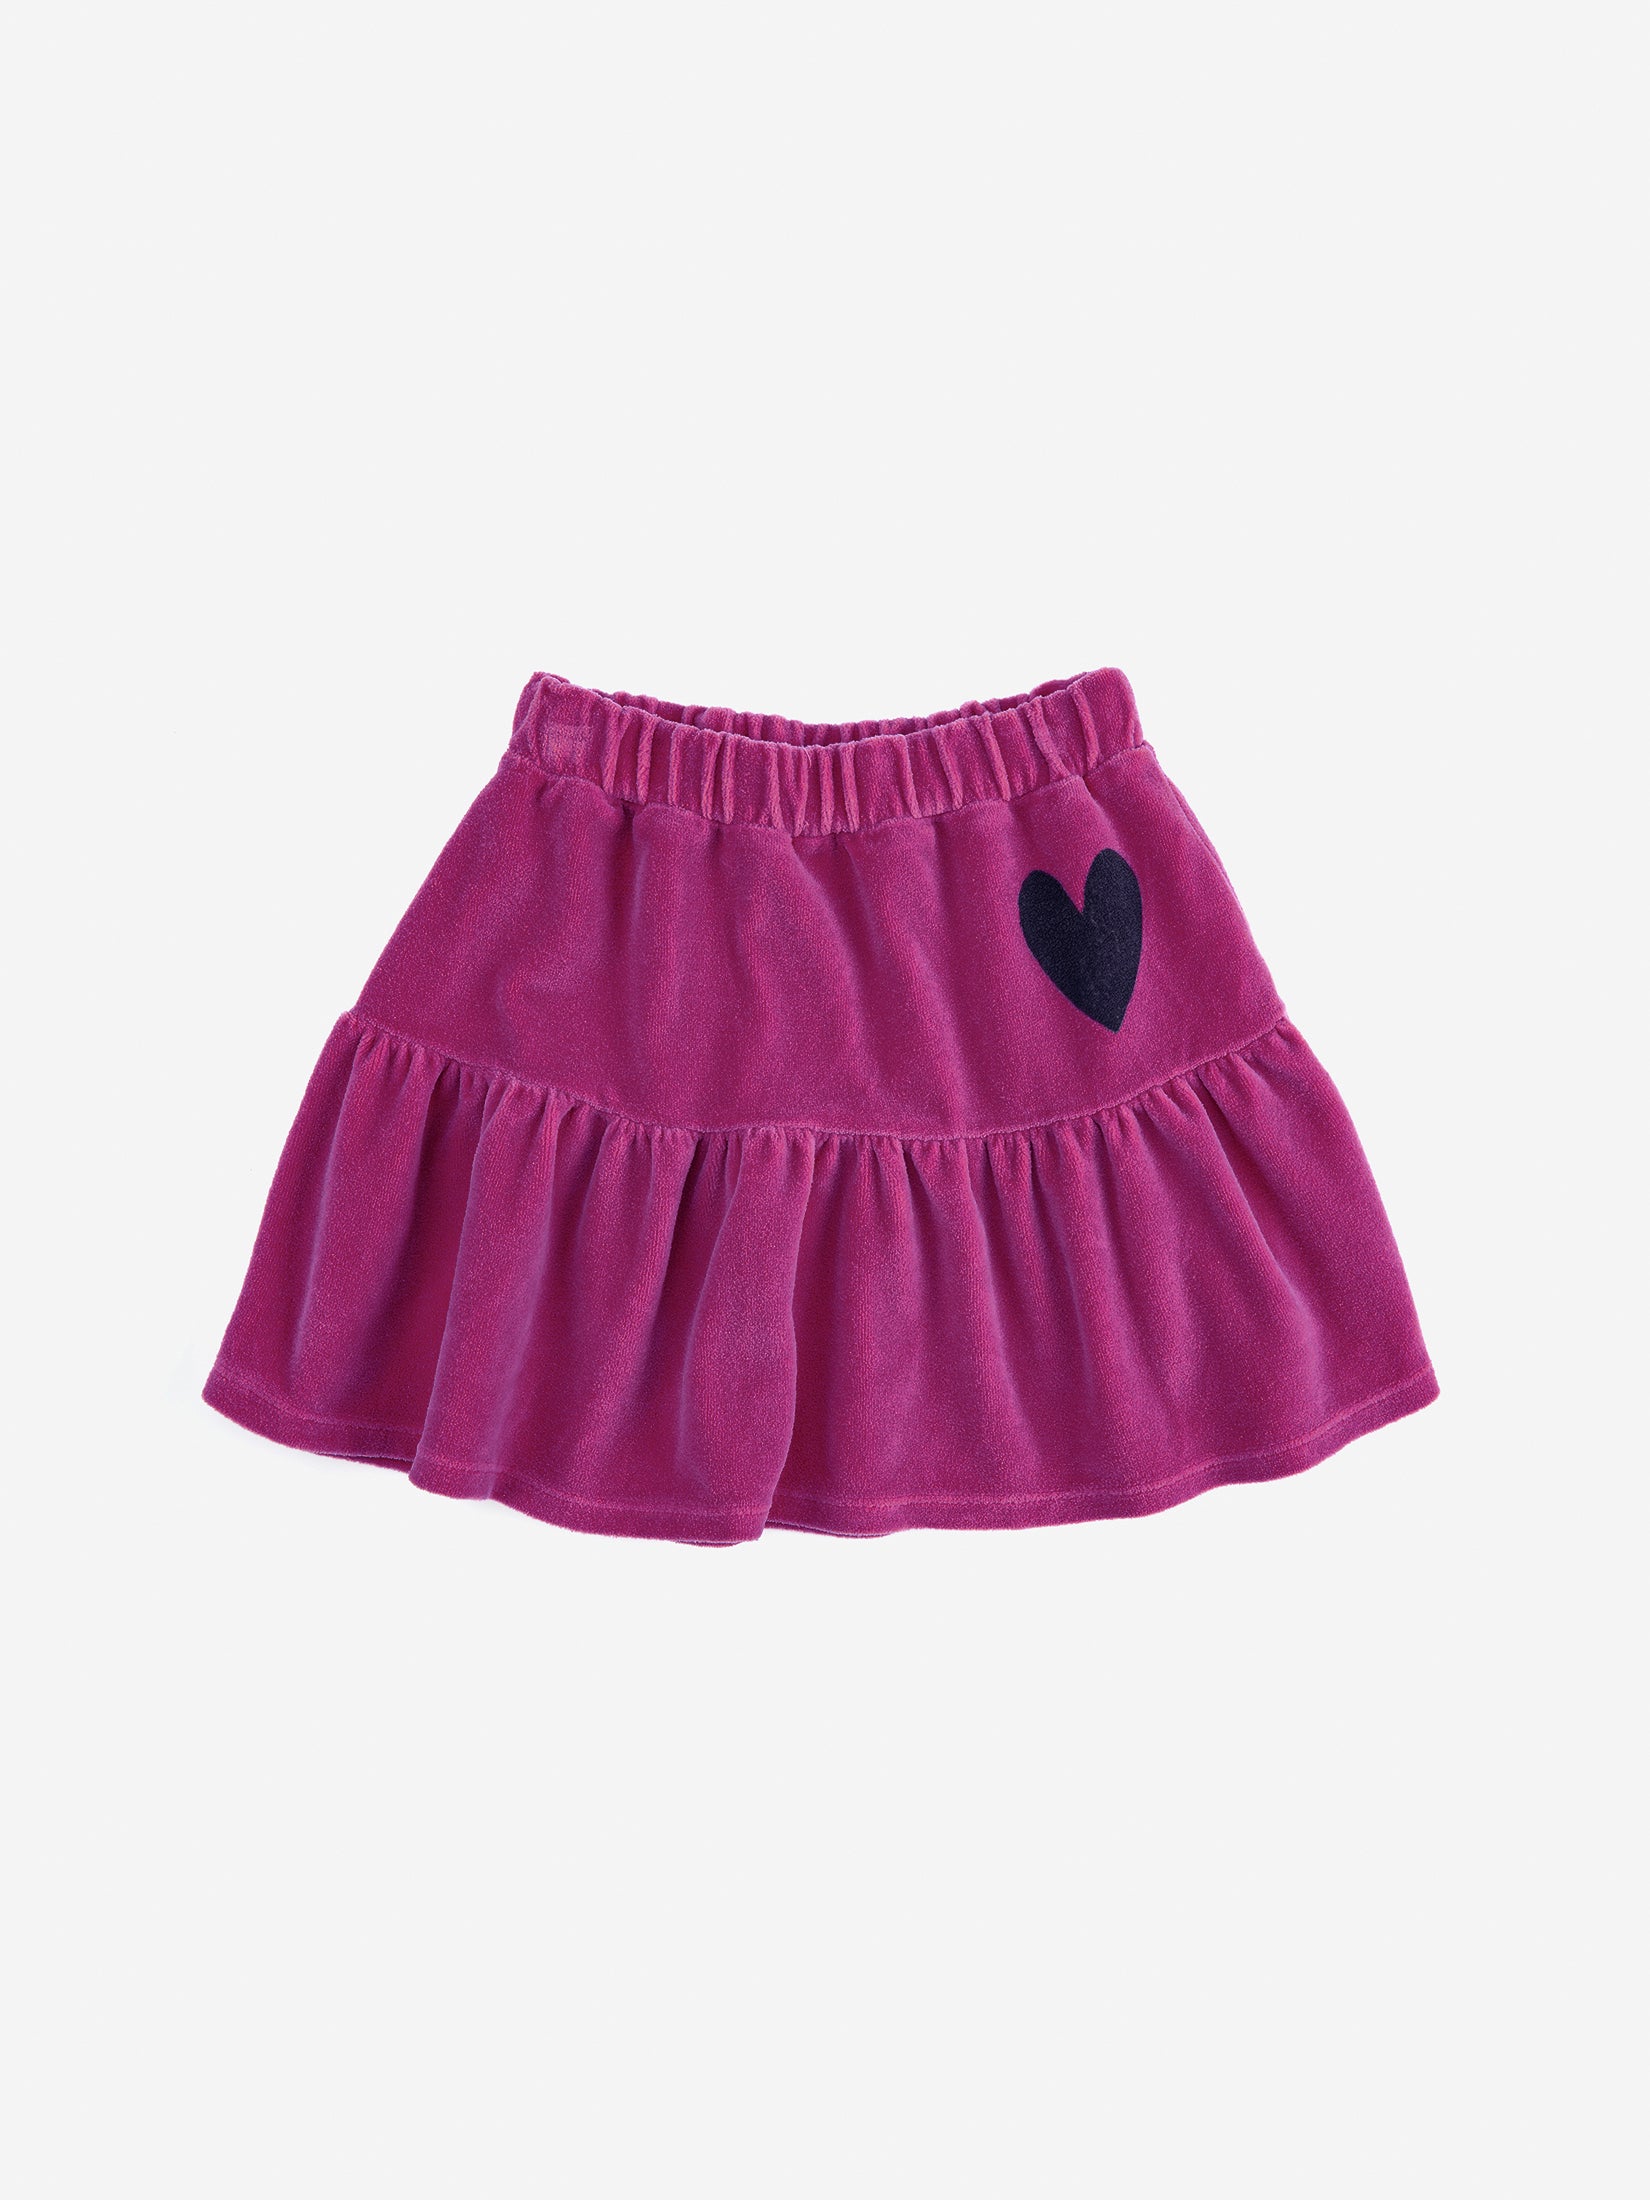 Bobo Choses Kids Skirt - Heart Velvet